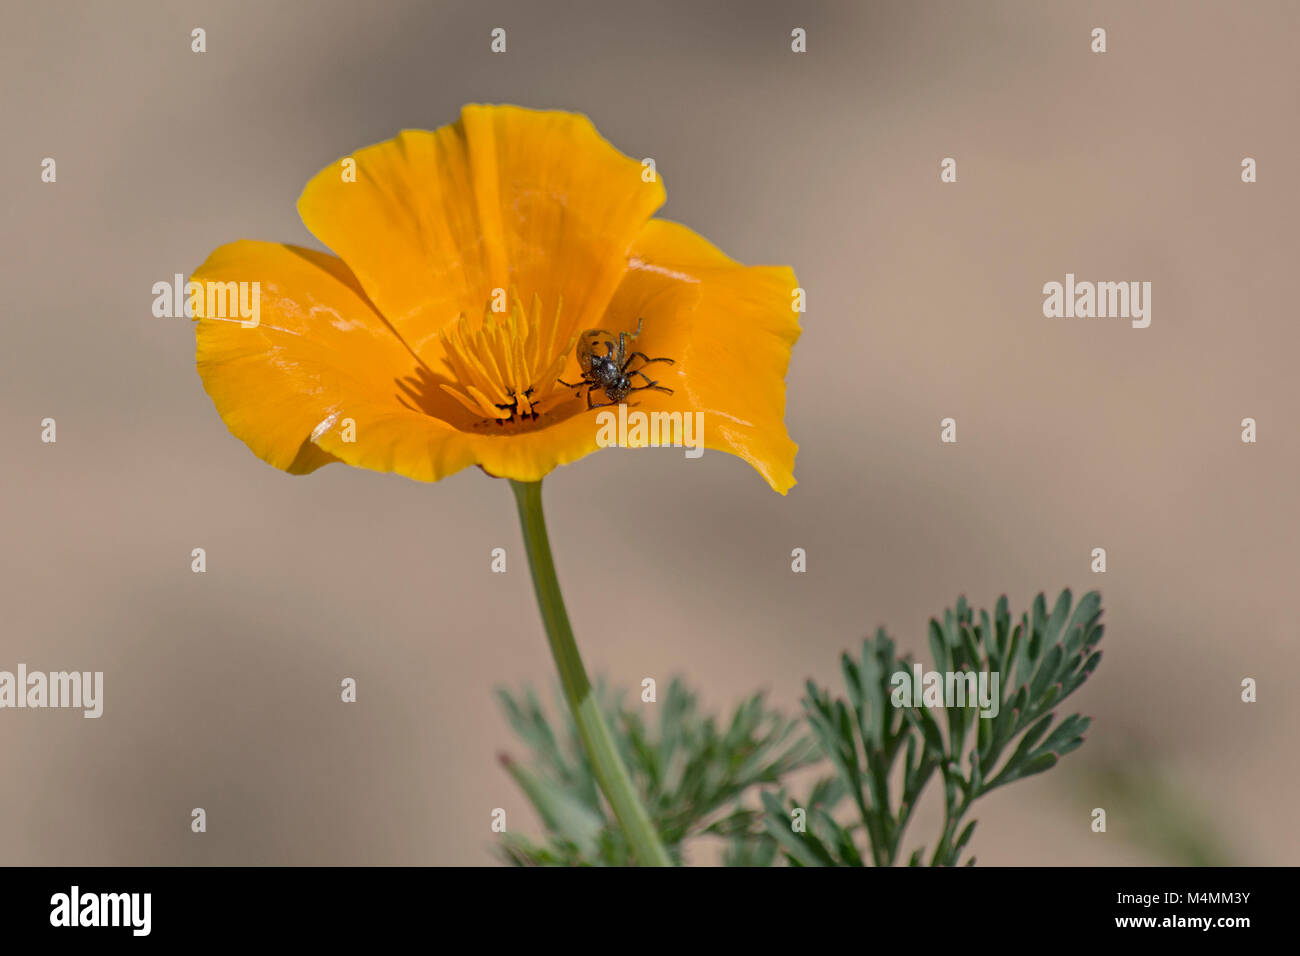 Makro eines gefleckten Käfers auf einem goldenen kalifornischen Mohn Blume und Blätter auf einem unscharfen beige-grauen Hintergrund Stockfoto